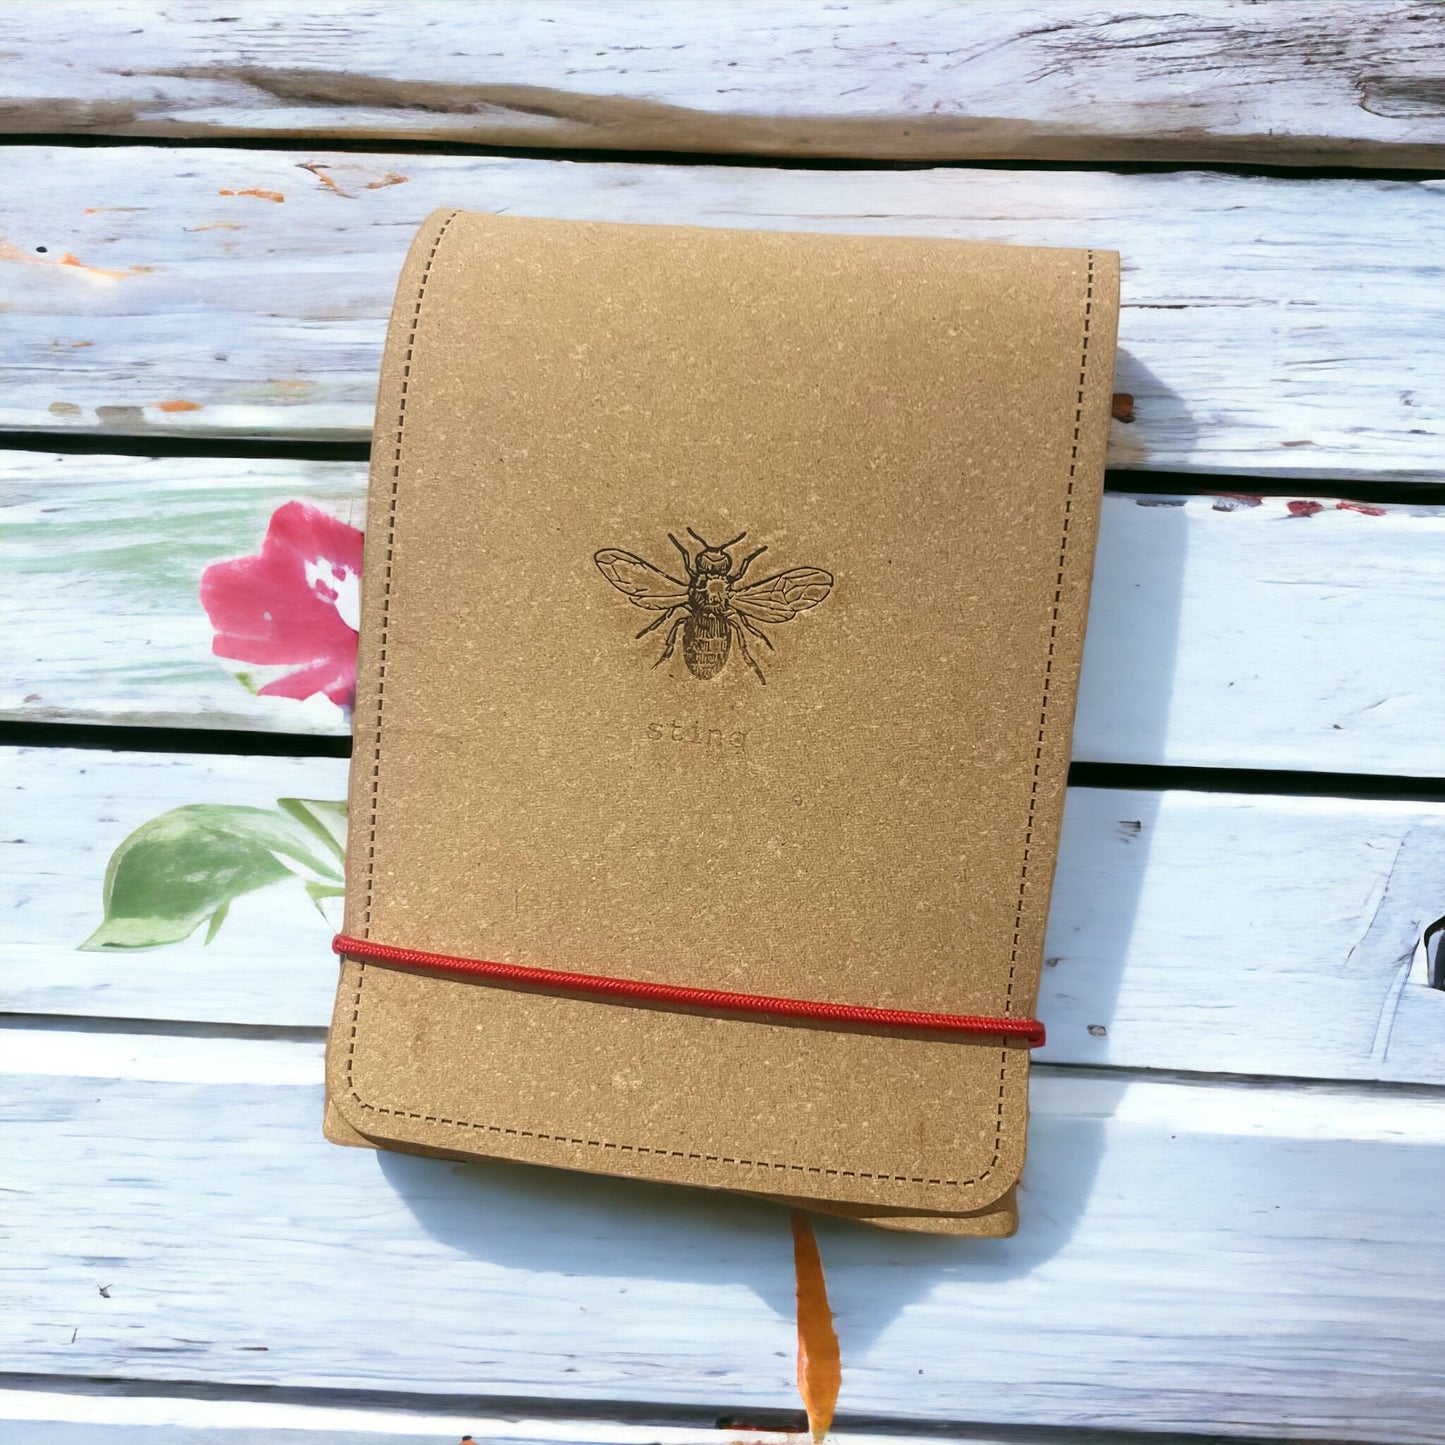 Snips Pocket Kit | Gift for Gardener's